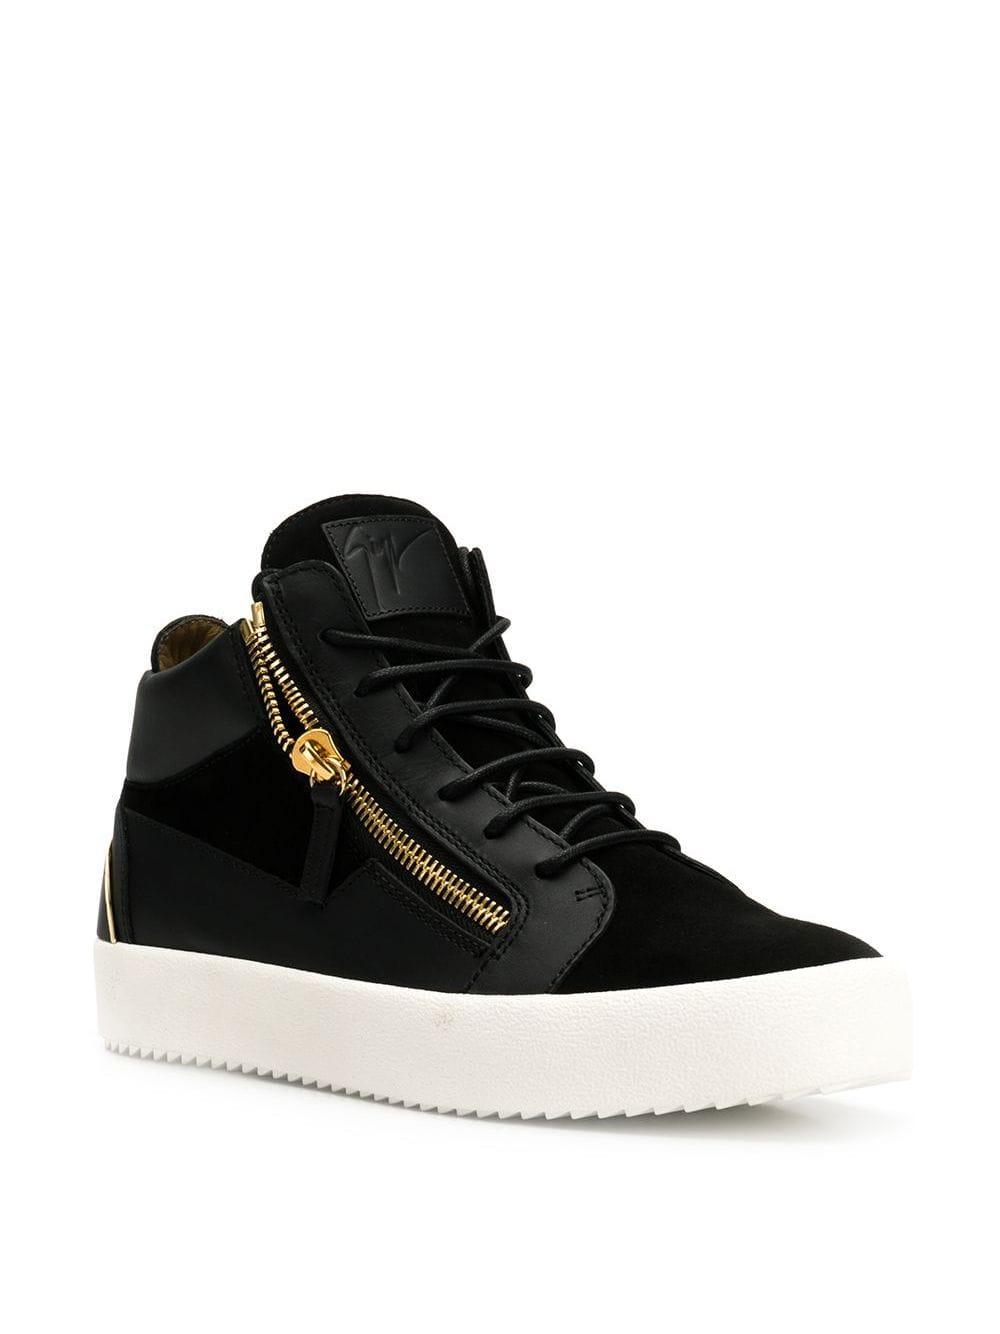 Giuseppe Zanotti Leather Side-zip Sneakers in Black for Men - Lyst